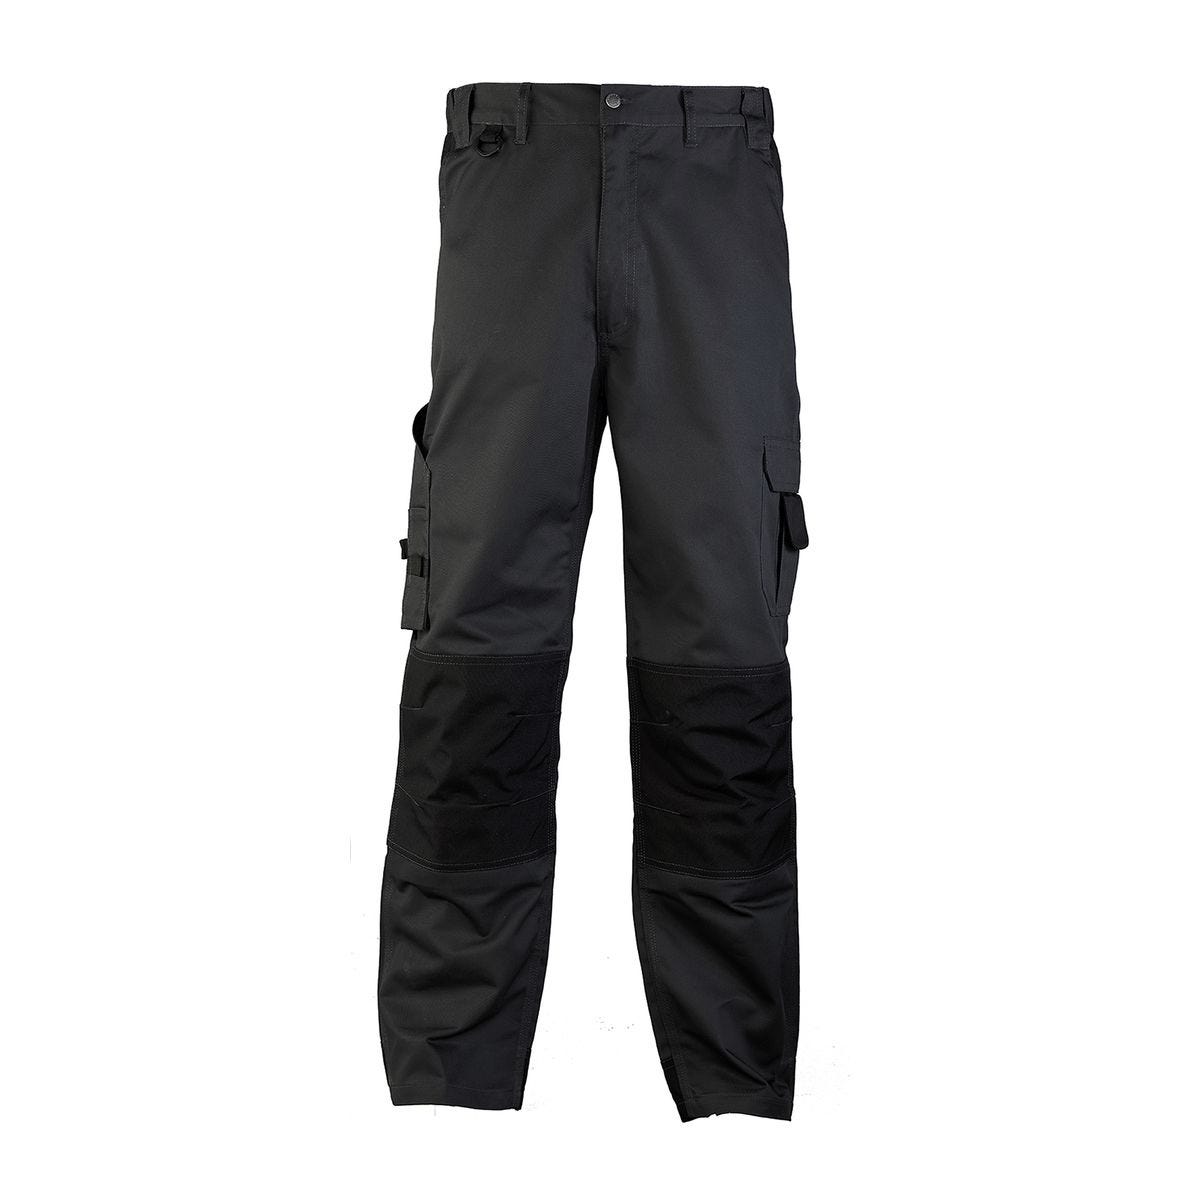 Pantalon CLASS gris foncé - COVERGUARD - Taille 3XL 0